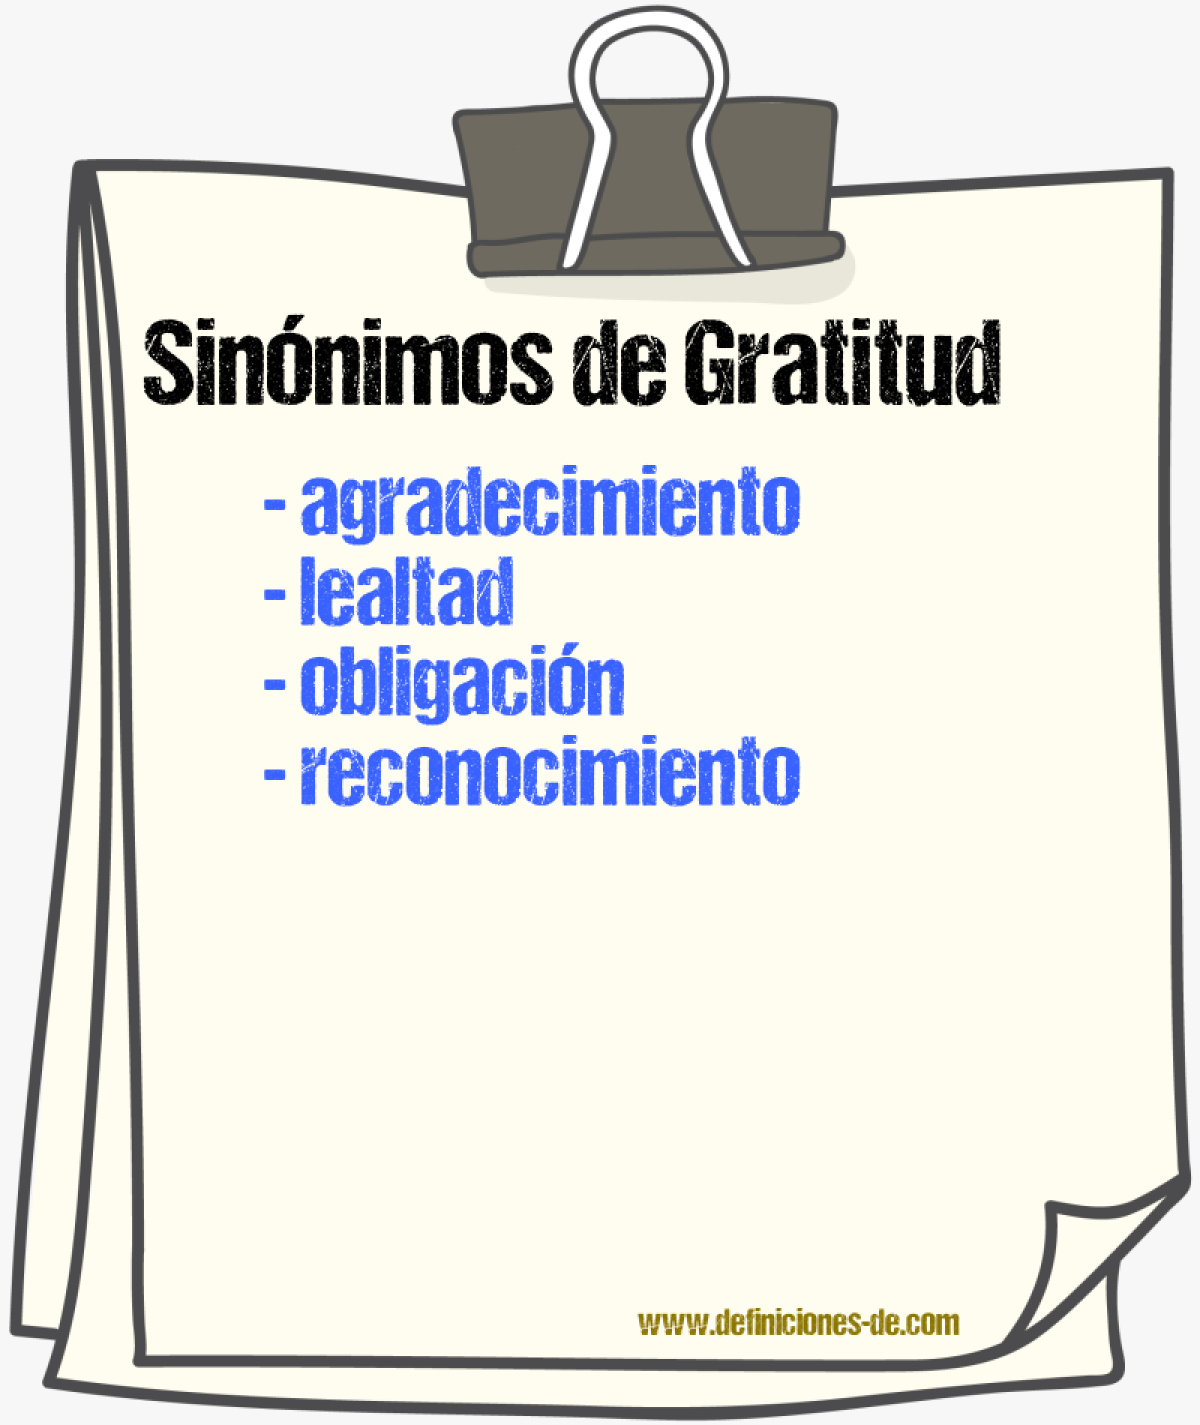 Sinónimos de gratitud